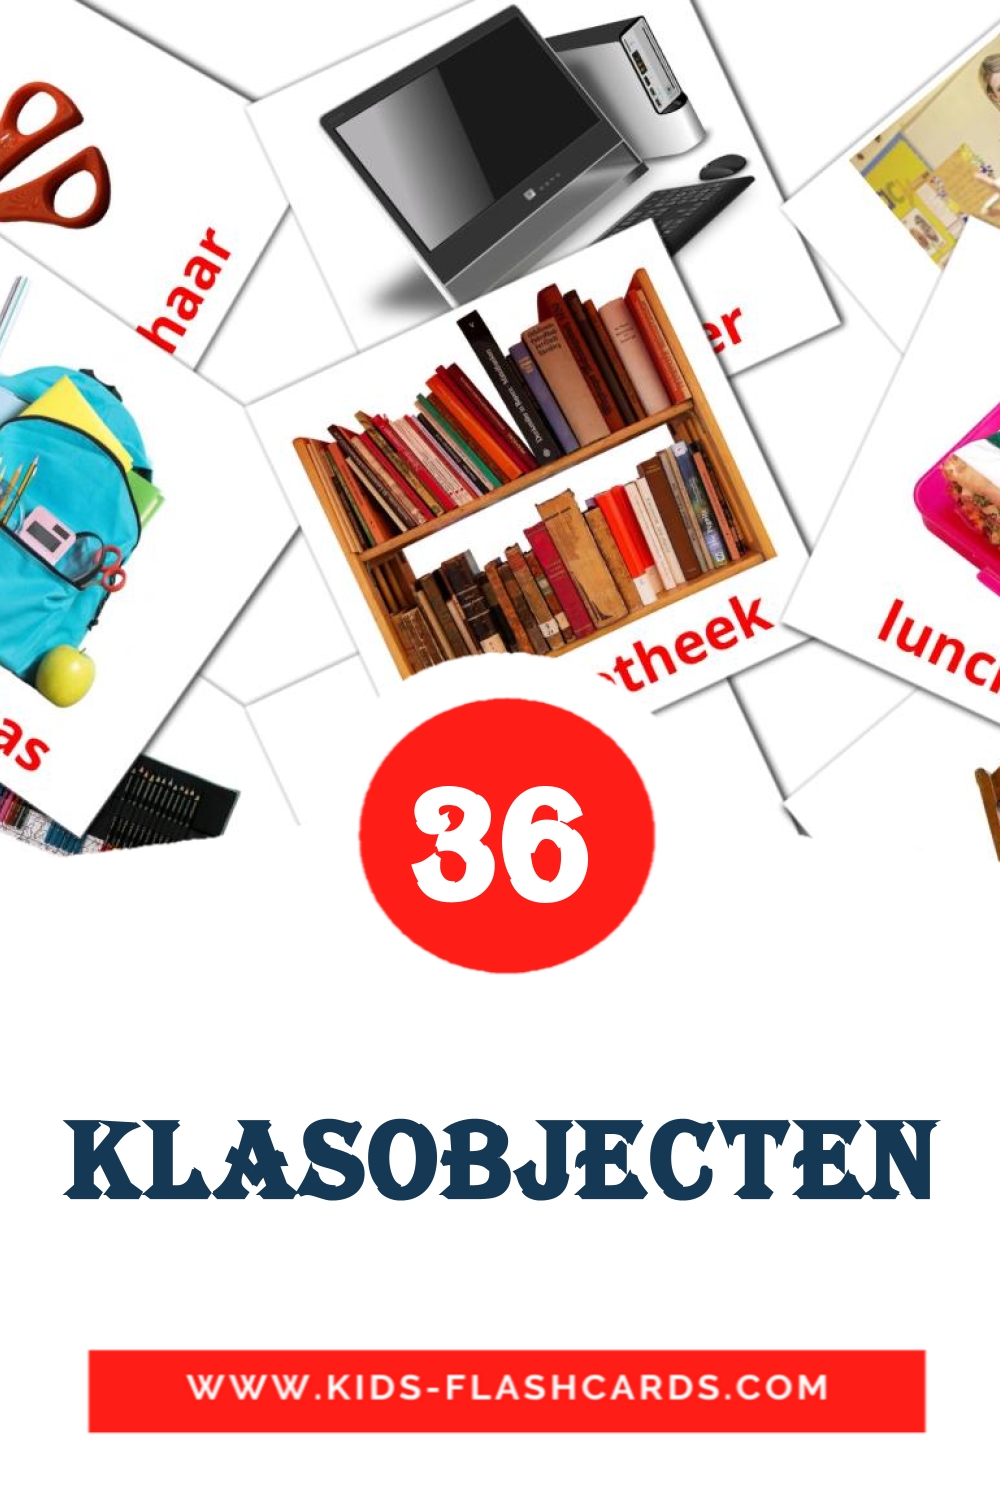 Klasobjecten на dutch для Детского Сада (36 карточек)